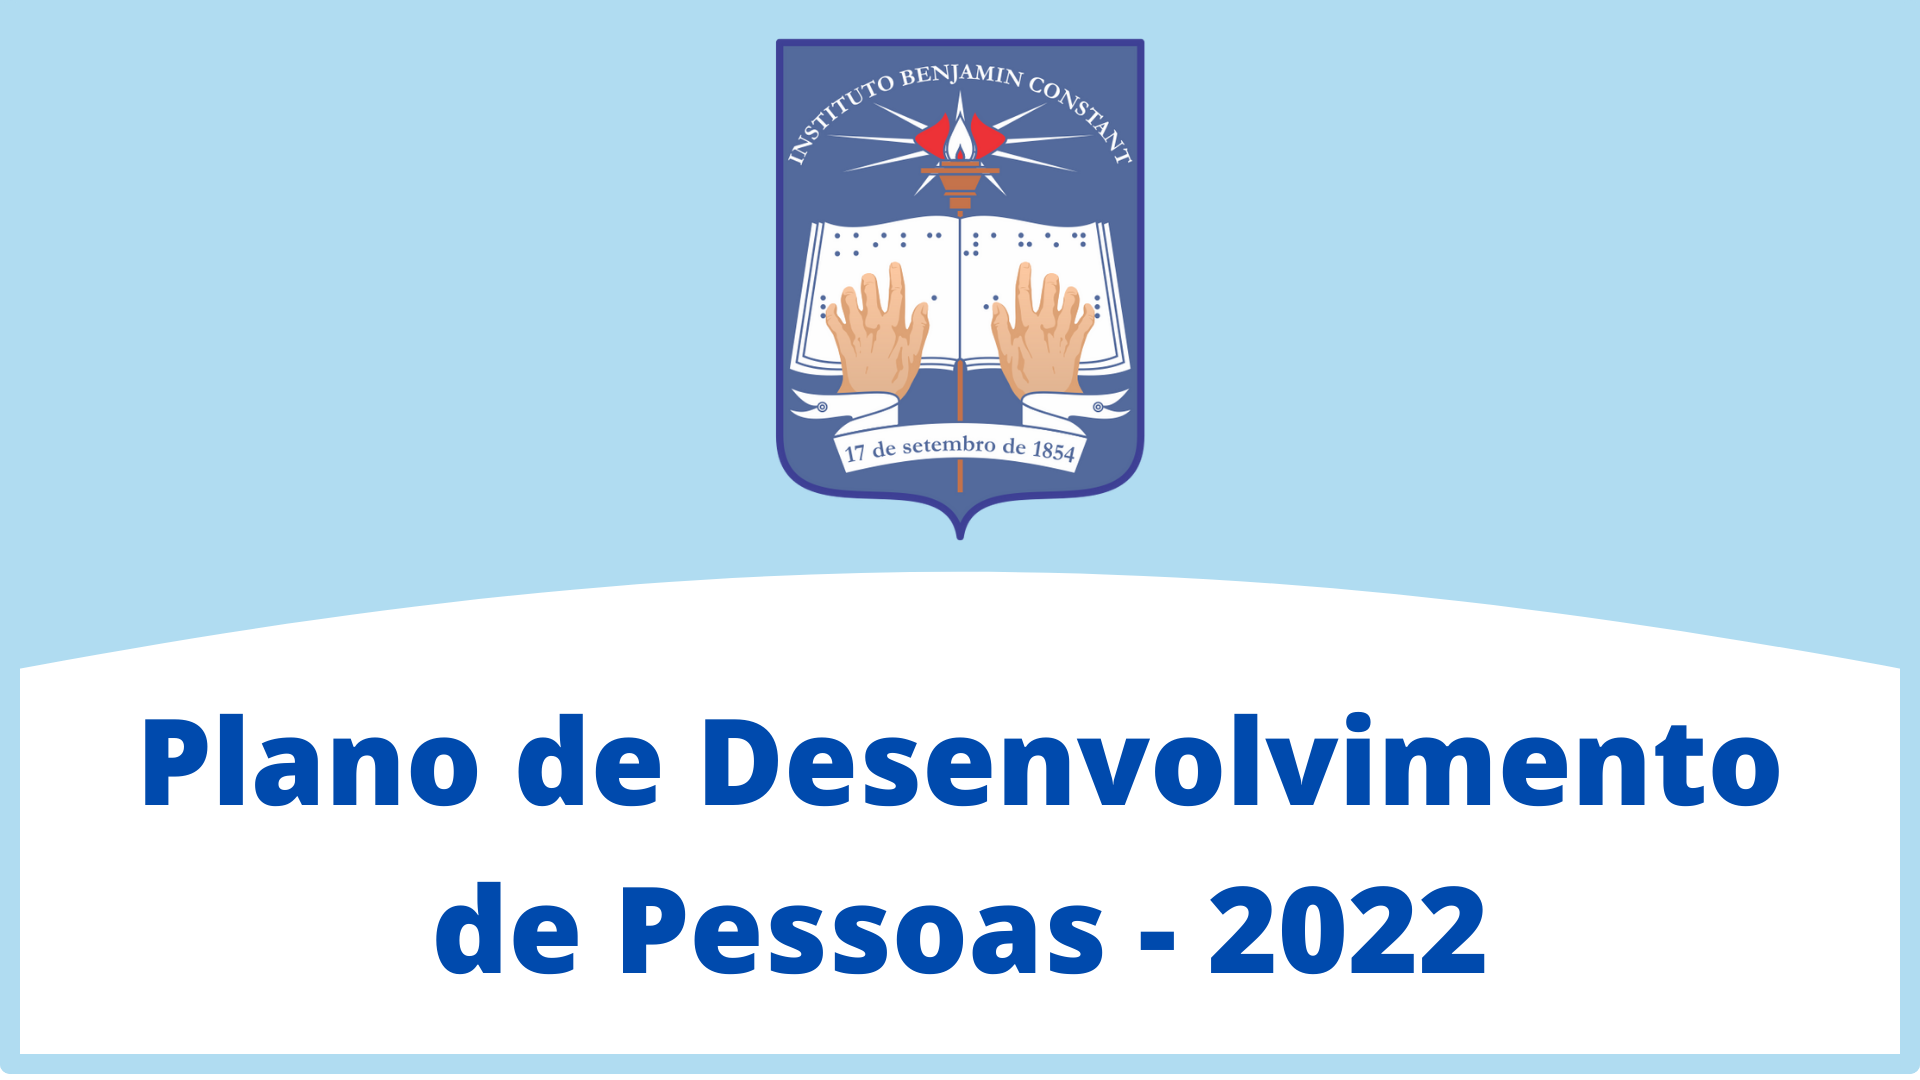 Sobre um card azul claro, centralizado na parte de cima, está a logo do IBC. Na parte de baixo, sobre um arco branco, em letras azuis, lê-se: “Plano de Desenvolvimento de Pessoas – 2022”.